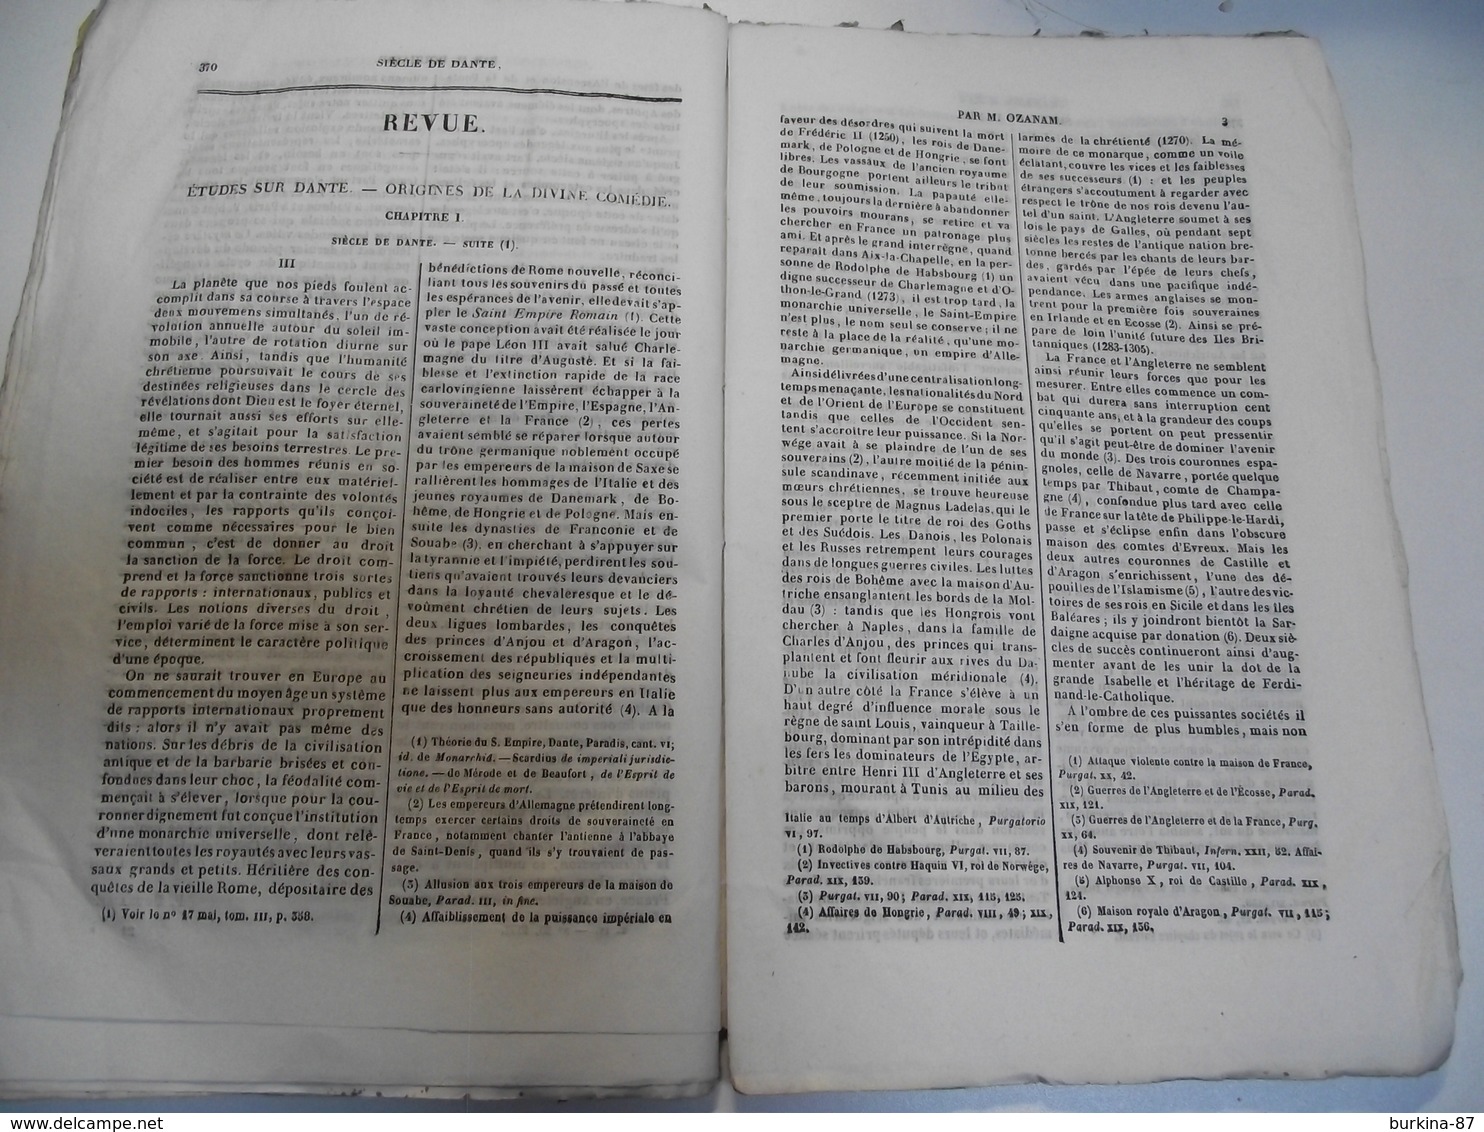 L' UNIVERSITE CATHOLIQUE , 1837, N° 23 , 70 pages environ, revue